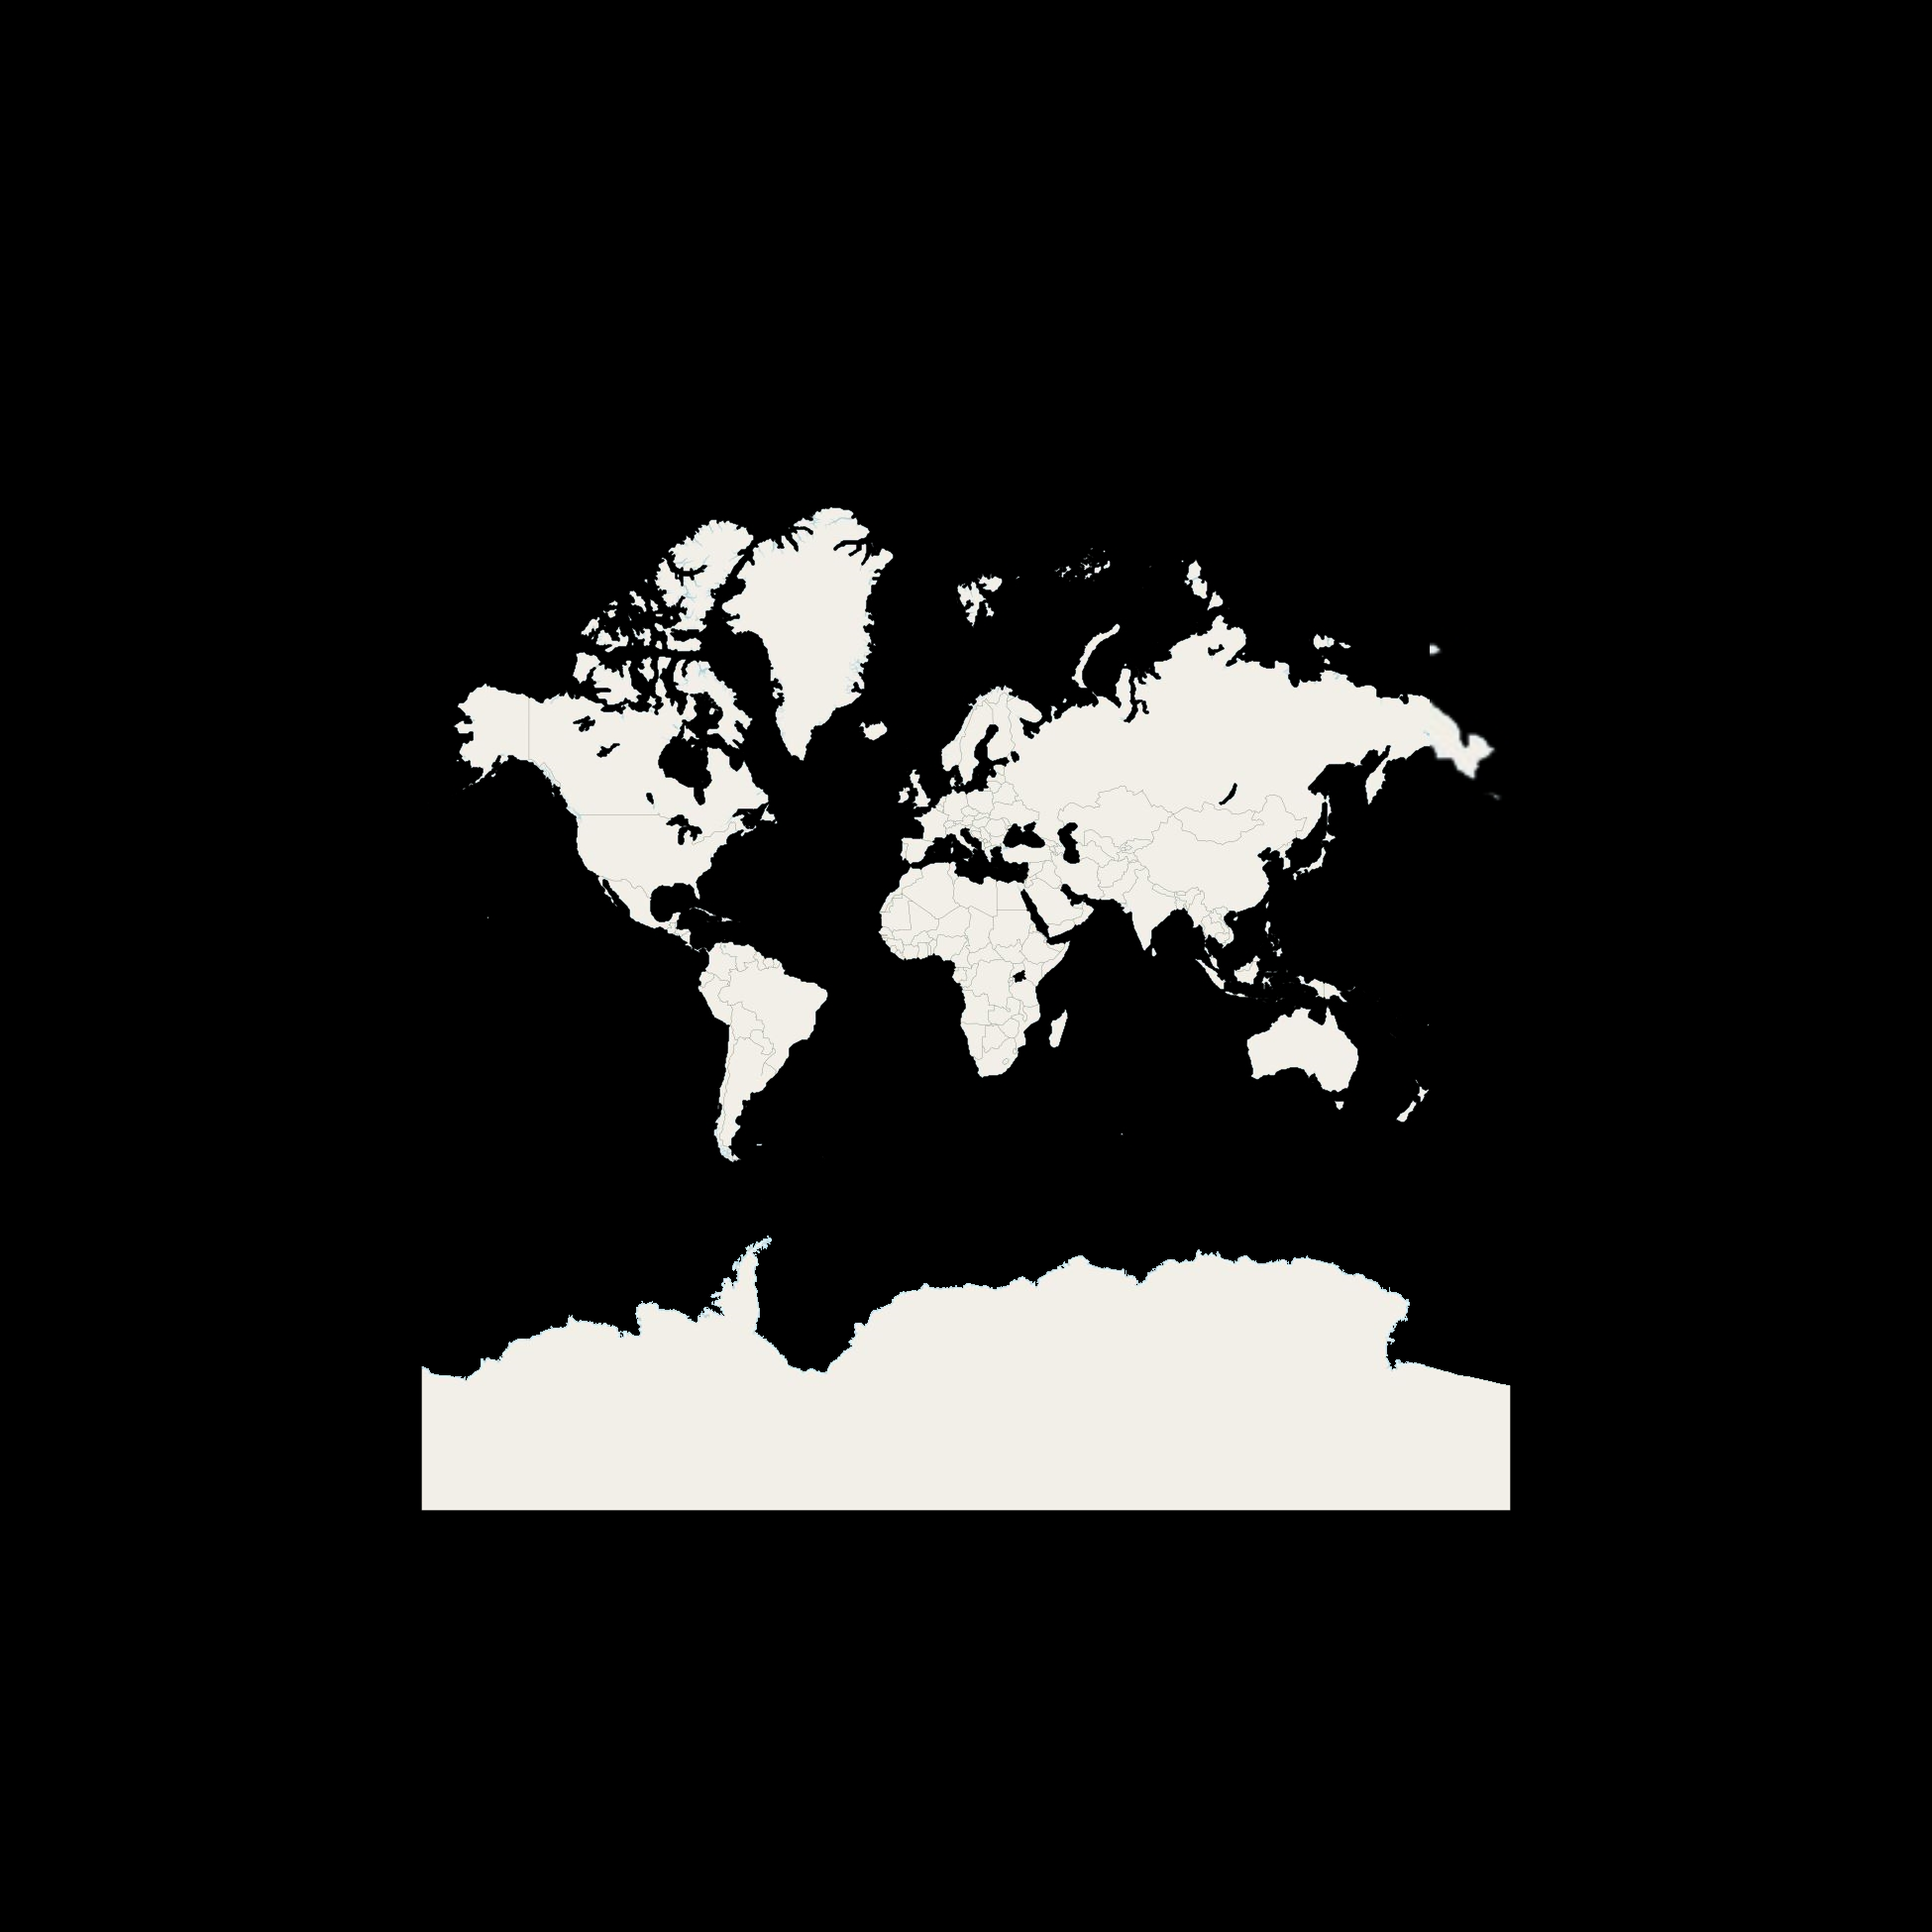 Angepasste Weltkarte in schwarz-weiß